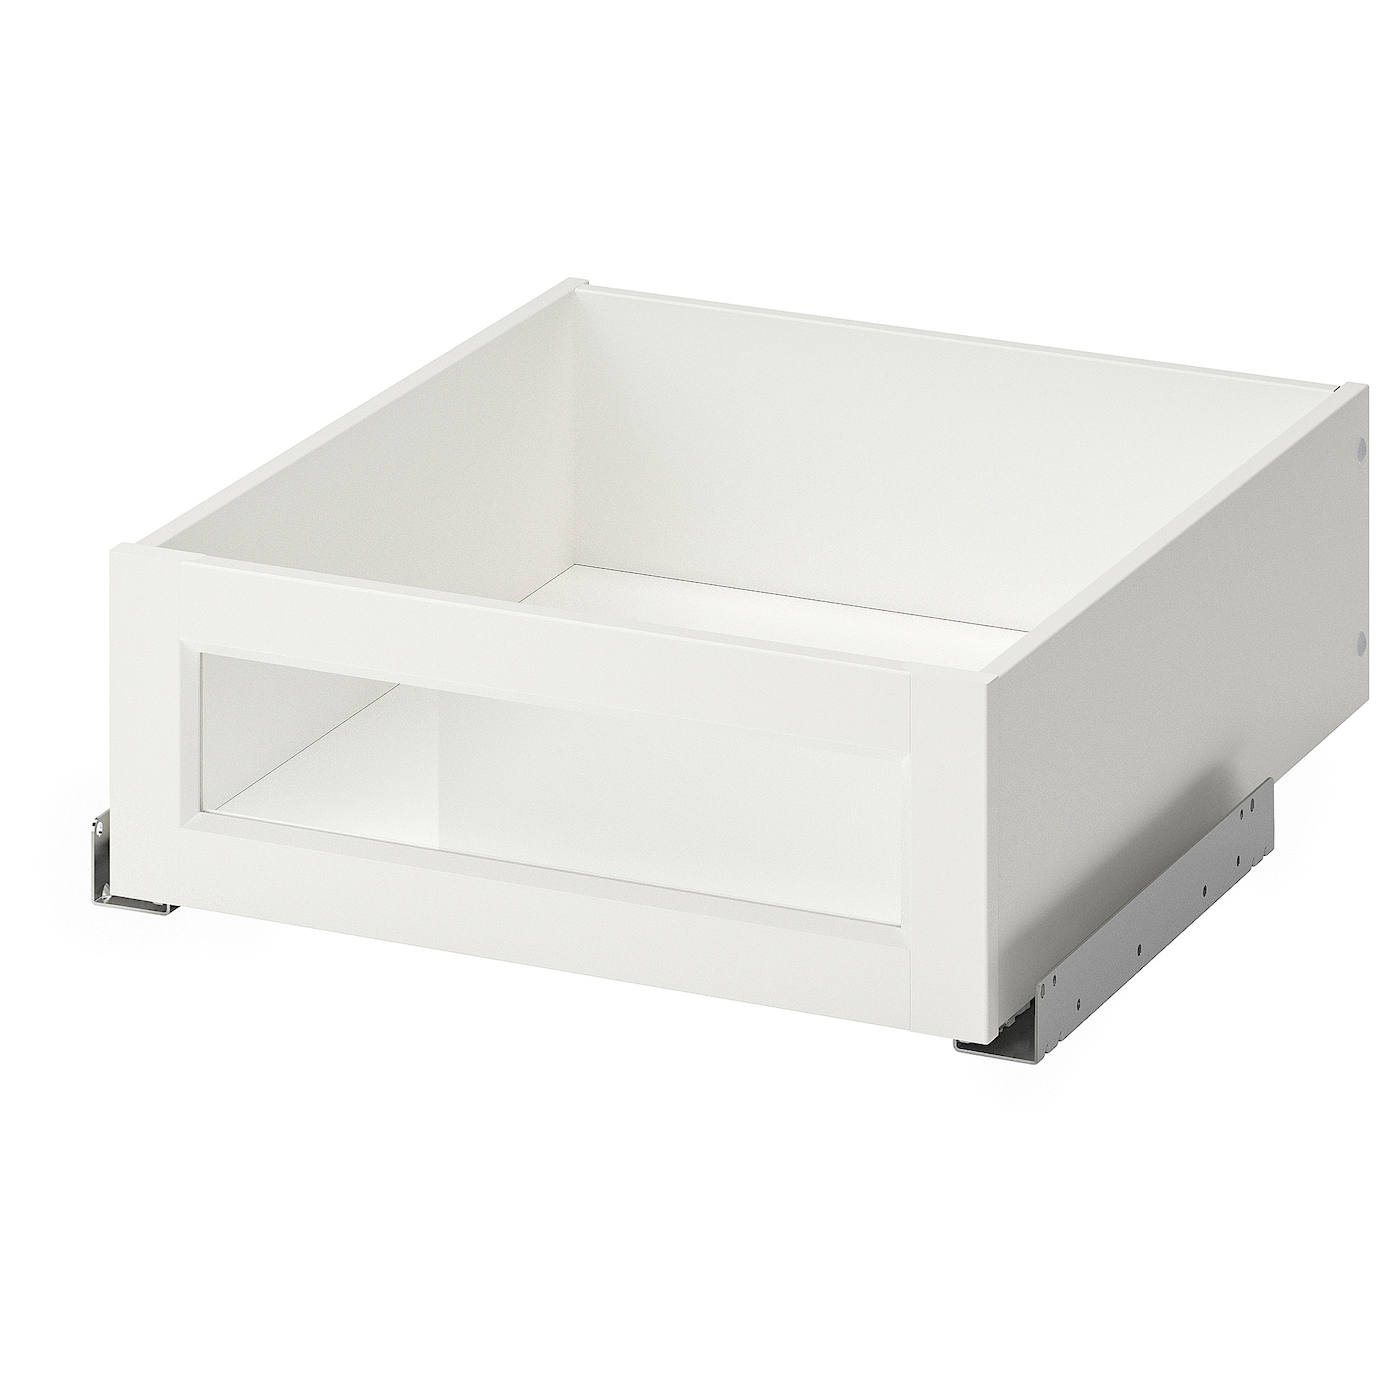 Ящик с фронтальной панелью - IKEA KOMPLEMENT, 50x58 см, белый КОМПЛИМЕНТ ИКЕА